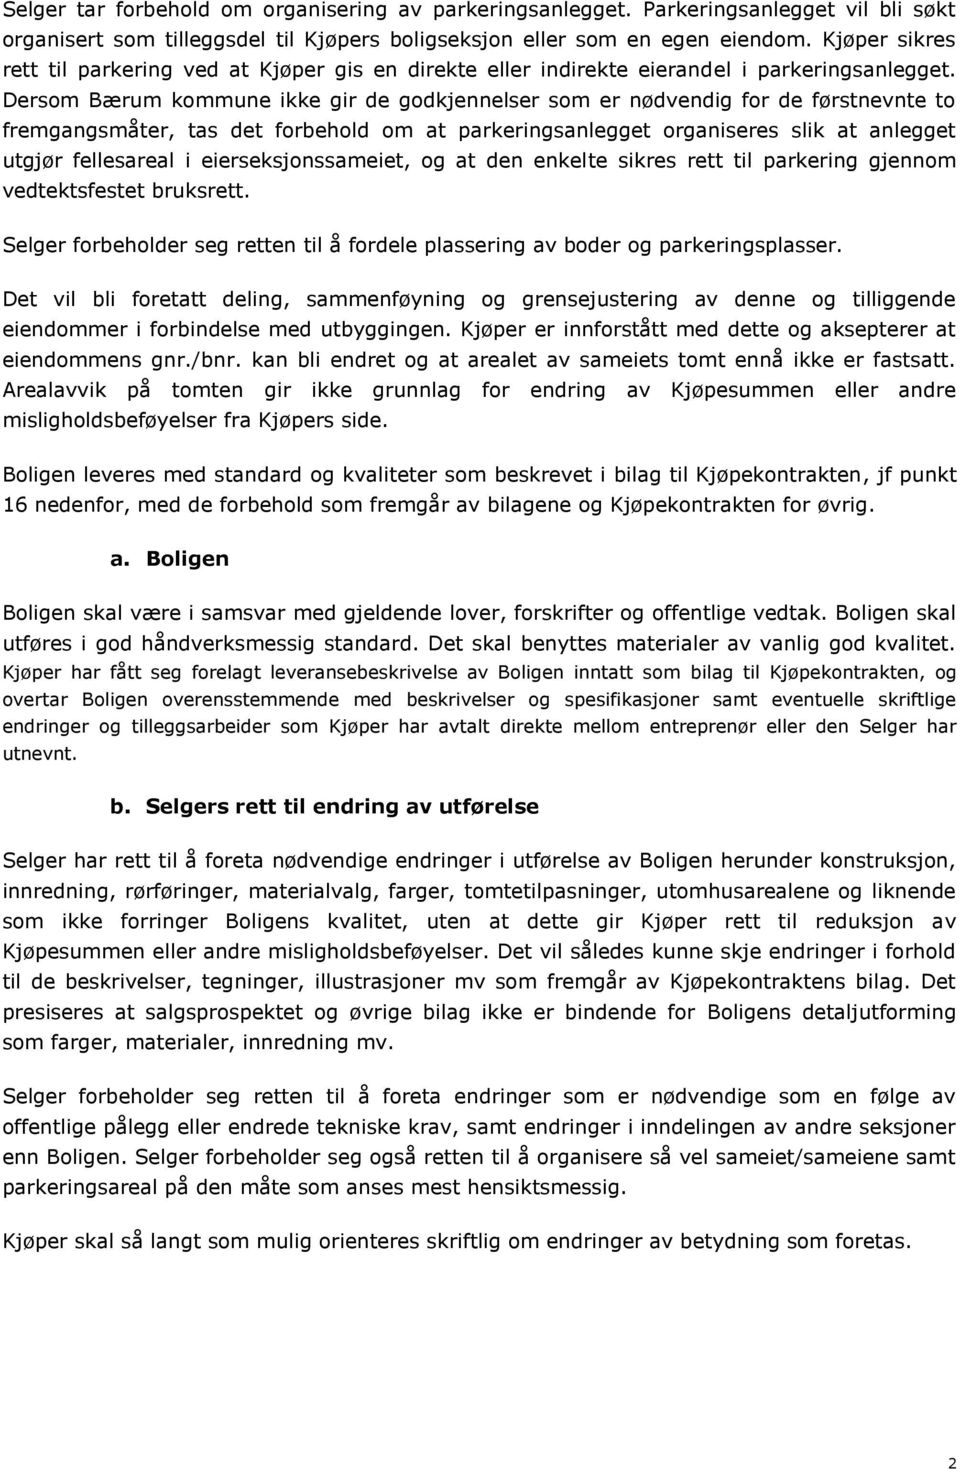 Dersom Bærum kommune ikke gir de godkjennelser som er nødvendig for de førstnevnte to fremgangsmåter, tas det forbehold om at parkeringsanlegget organiseres slik at anlegget utgjør fellesareal i